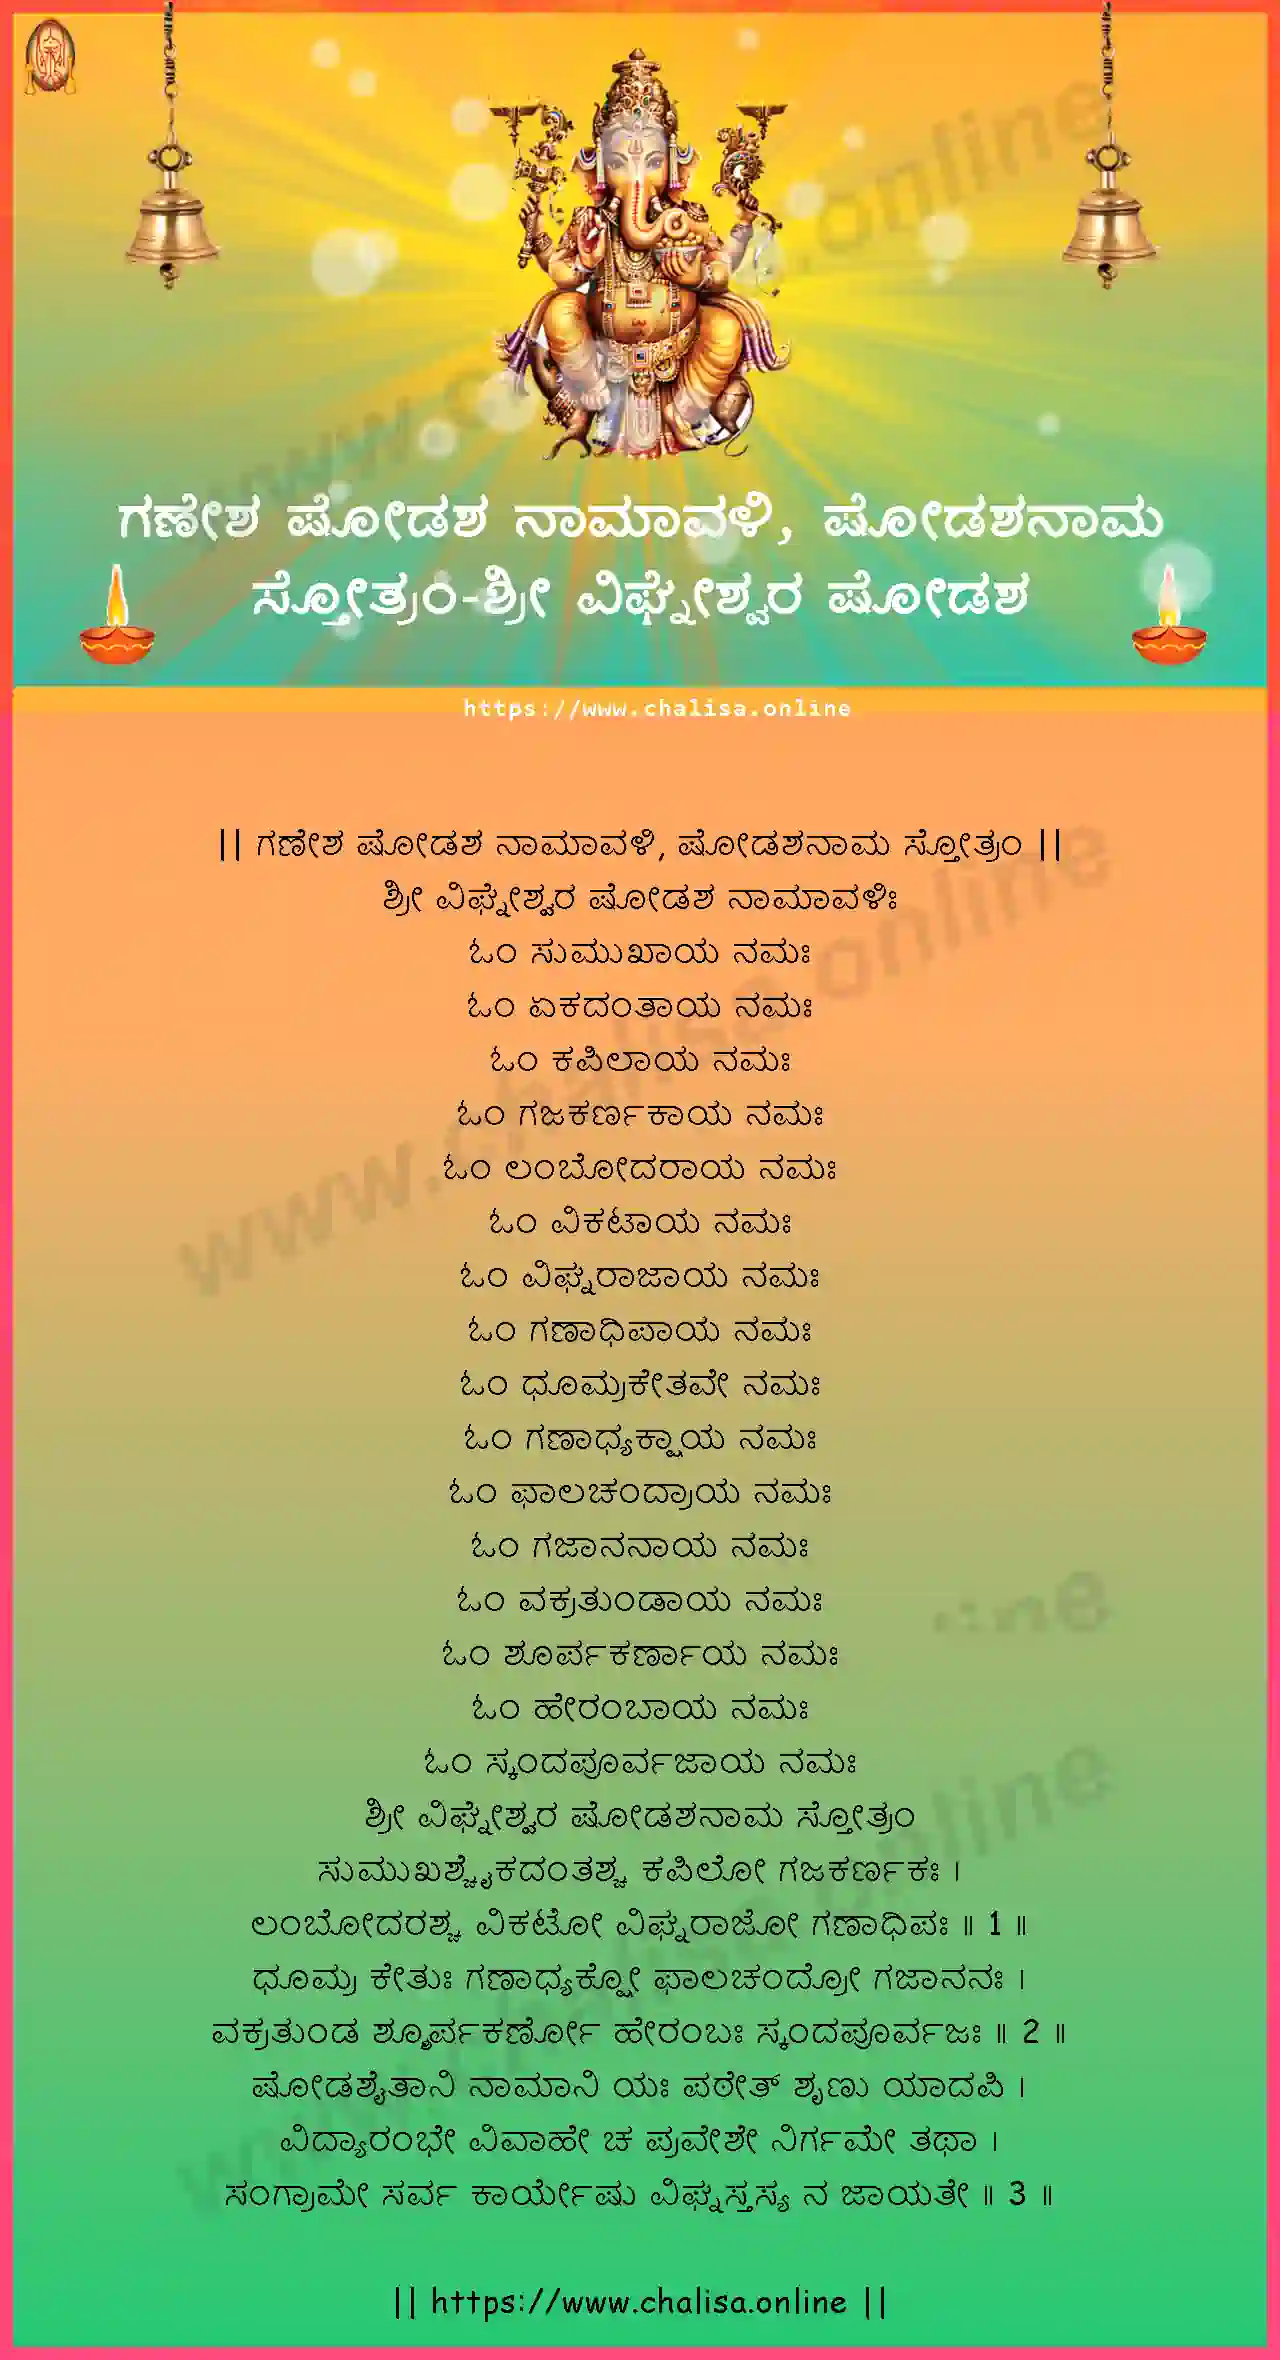 sri-vighnesvara-ganesha-shodasha-namavali,-shodashanama-stotram-kannada-kannada-lyrics-download